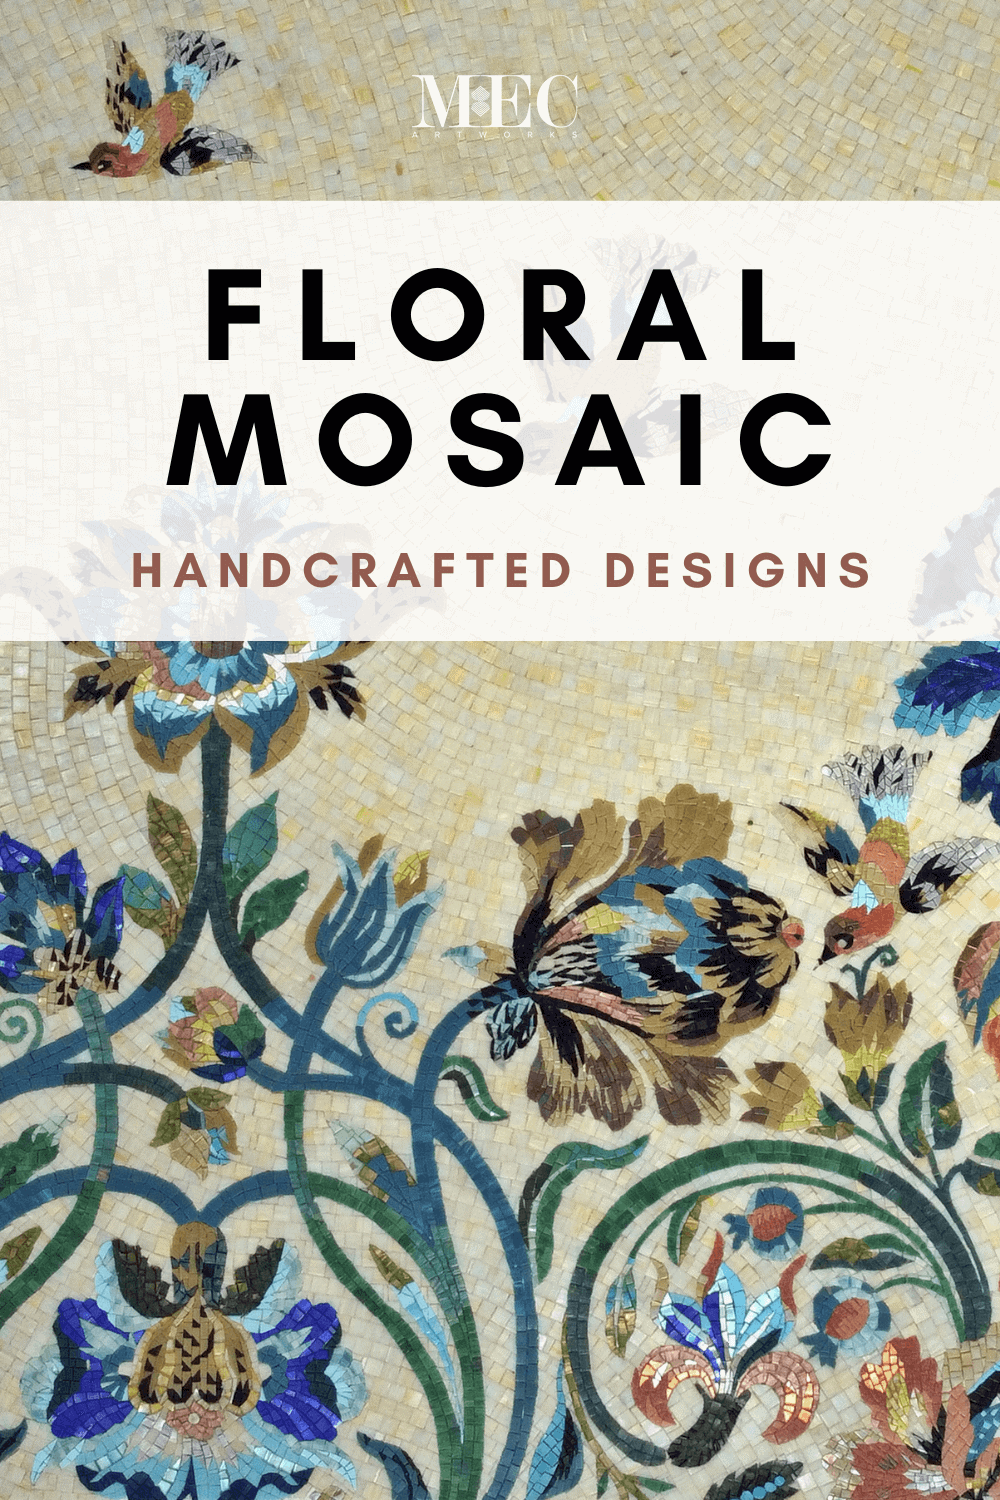 blog floral mosaic custom handcrafted tile design pinterest post